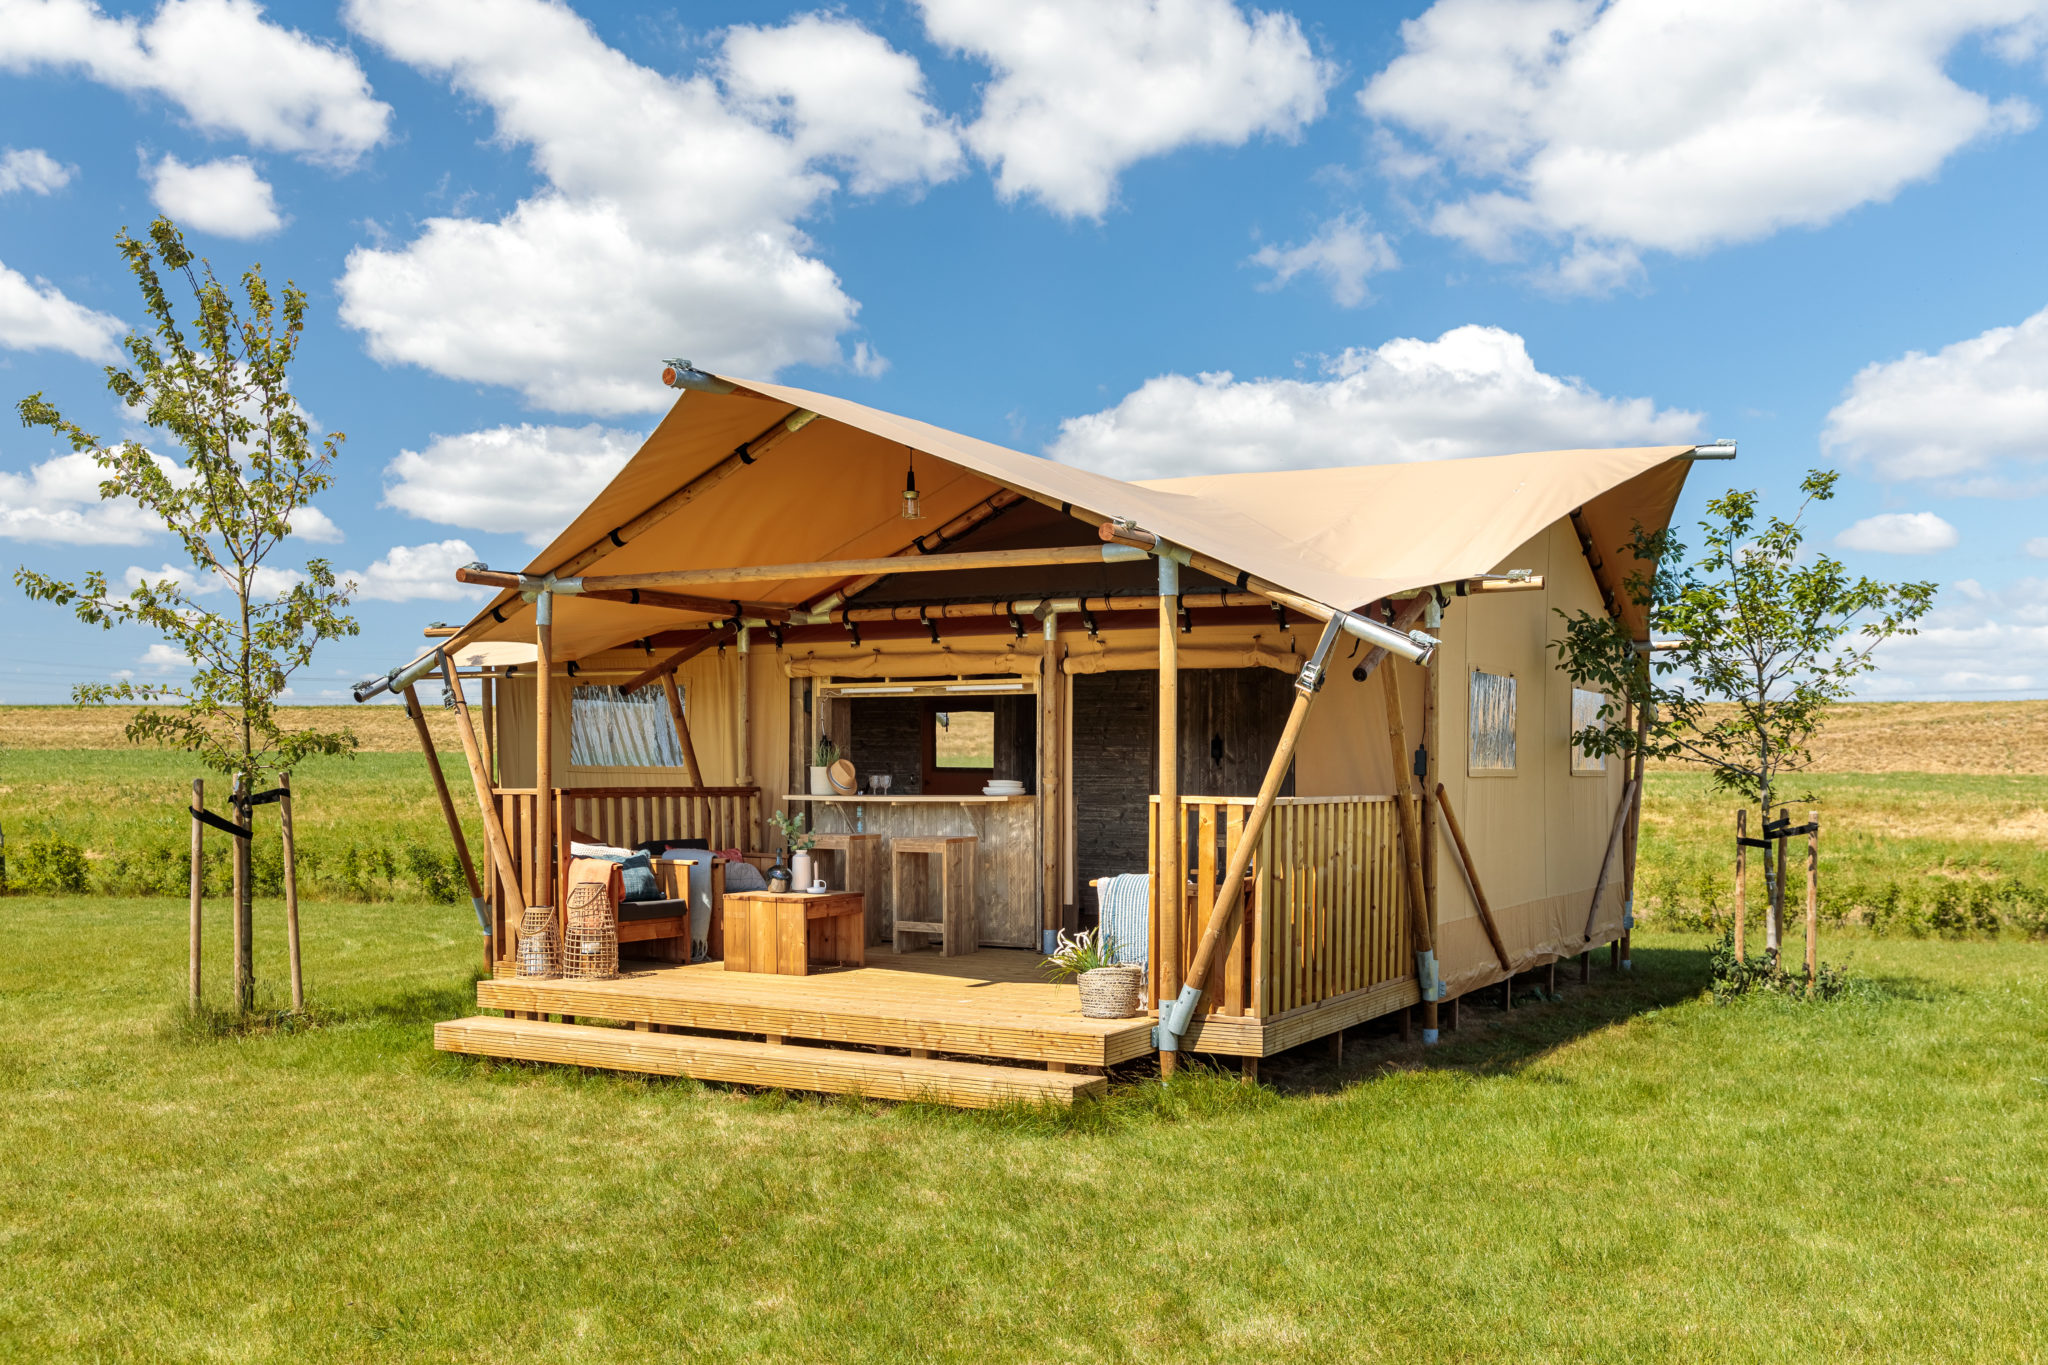 safari tents uk for sale